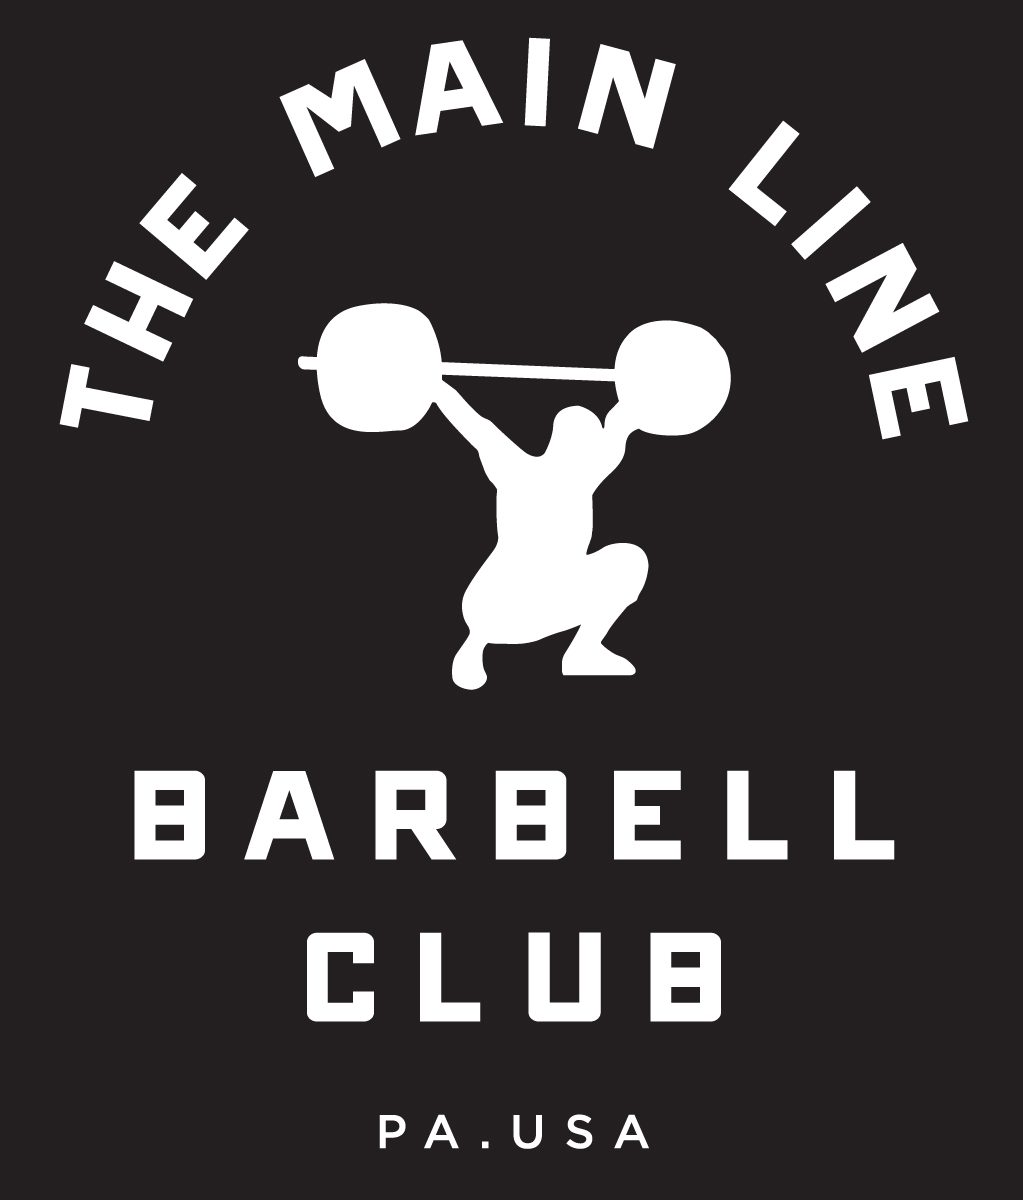 Week of 3.28.16 Barbell Club